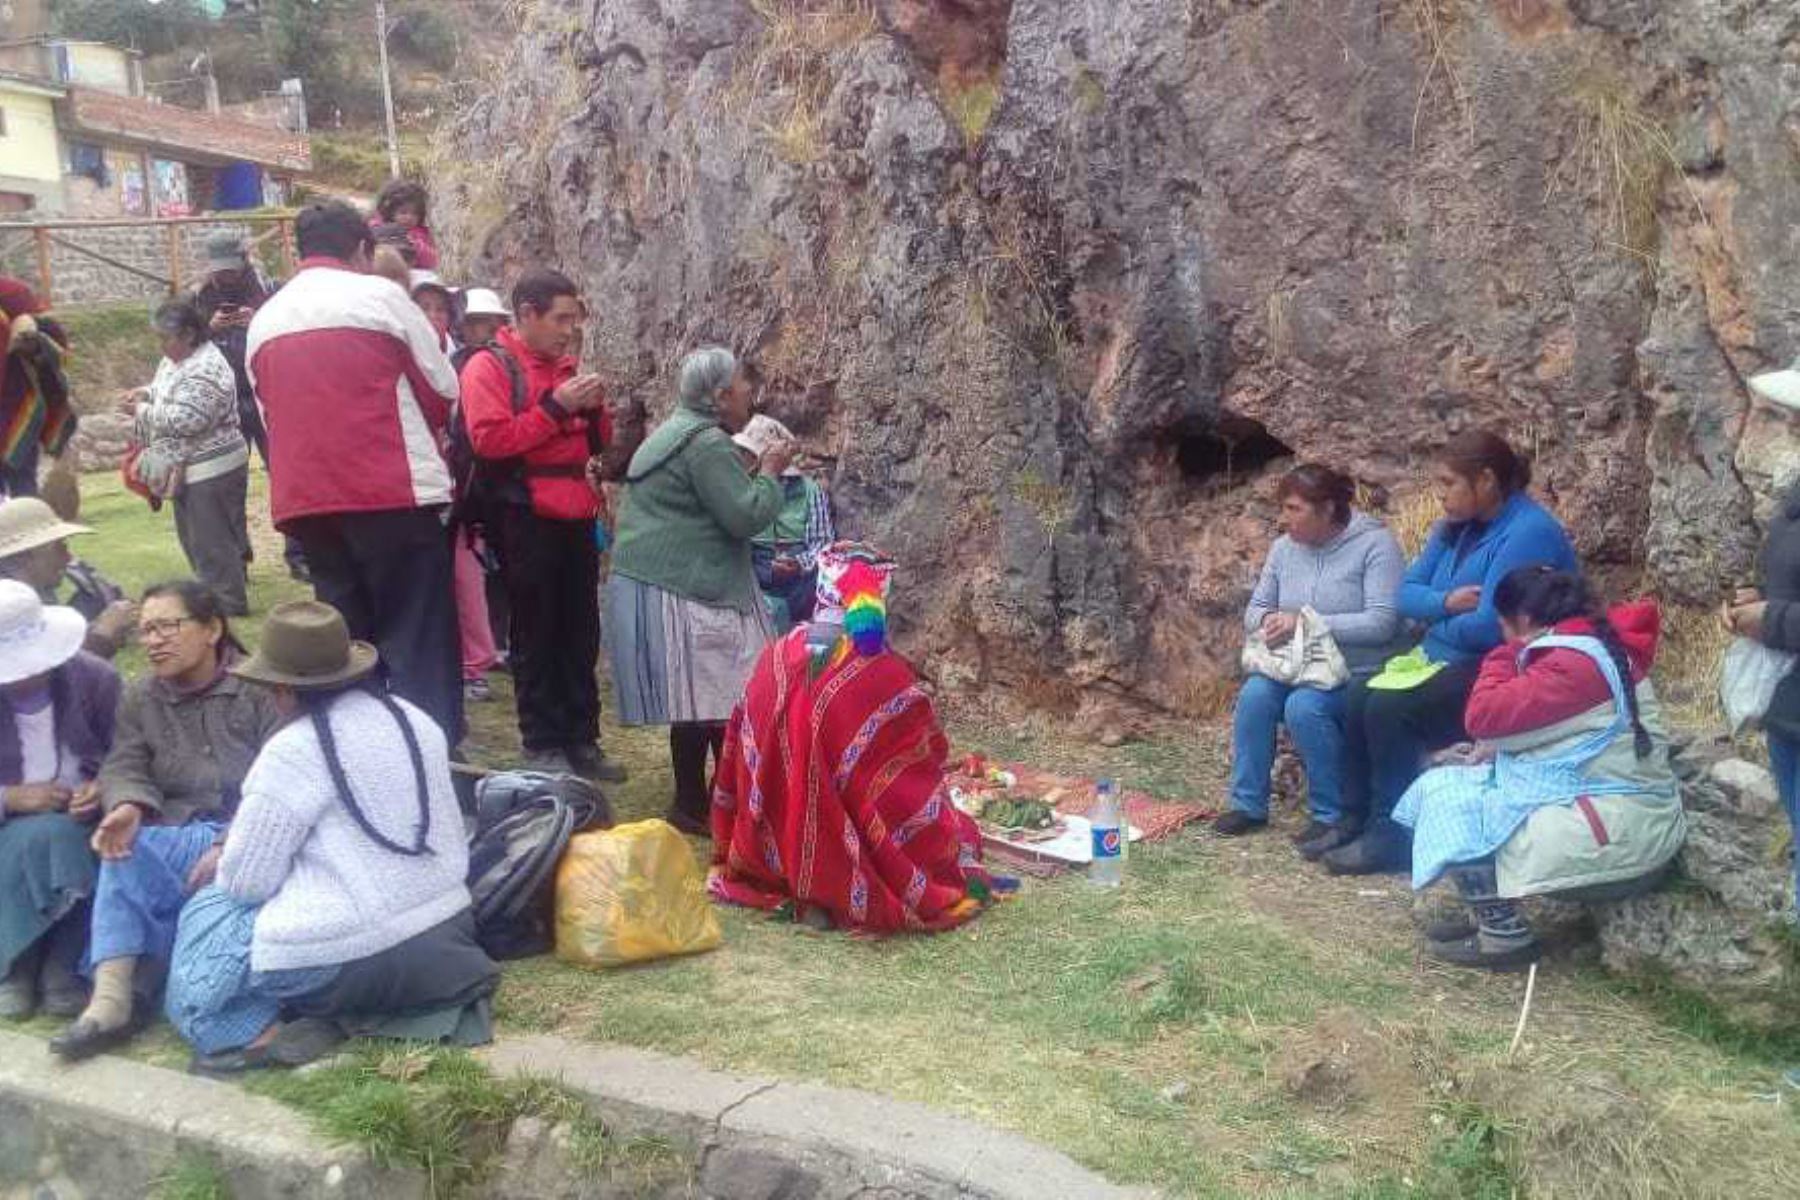 Con ocasión de las fiestas jubilares de Cusco y a fin de que la población conozca su vasto patrimonio arqueológico, representantes de la Dirección Desconcentrada de Cultura realizaron visitas guiadas a las principales huacas incas, ubicadas en el centro histórico de la ciudad imperial.